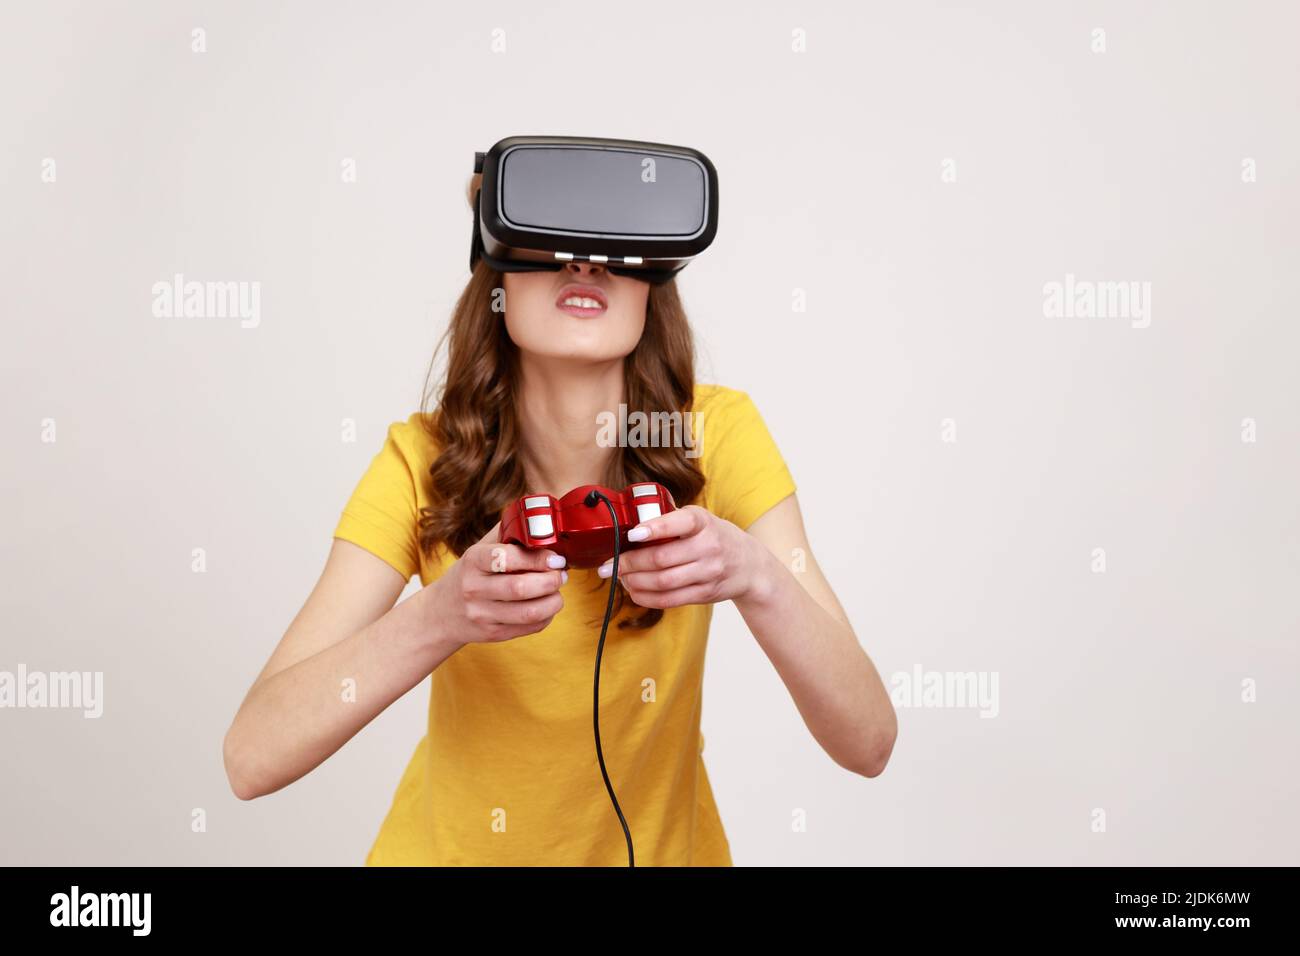 Konzentrierte Frau im jungen Alter in VR-Brille und beobachten virtuelle Welt mit erstaunt schockiert Ausdruck, Videospiel mit Joystick spielen. Innenaufnahme des Studios isoliert auf grauem Hintergrund. Stockfoto